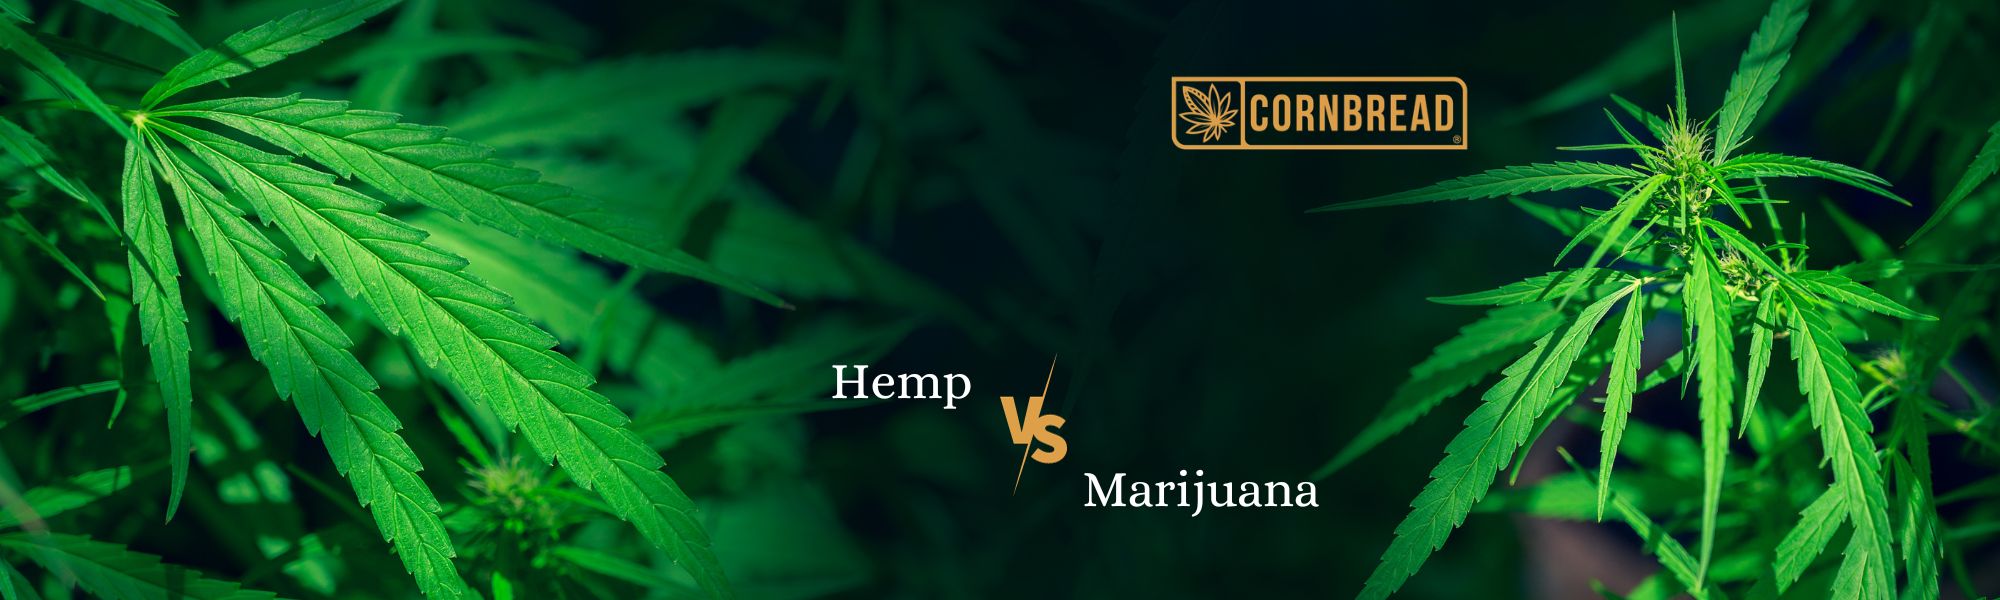 hemp vs marijuana